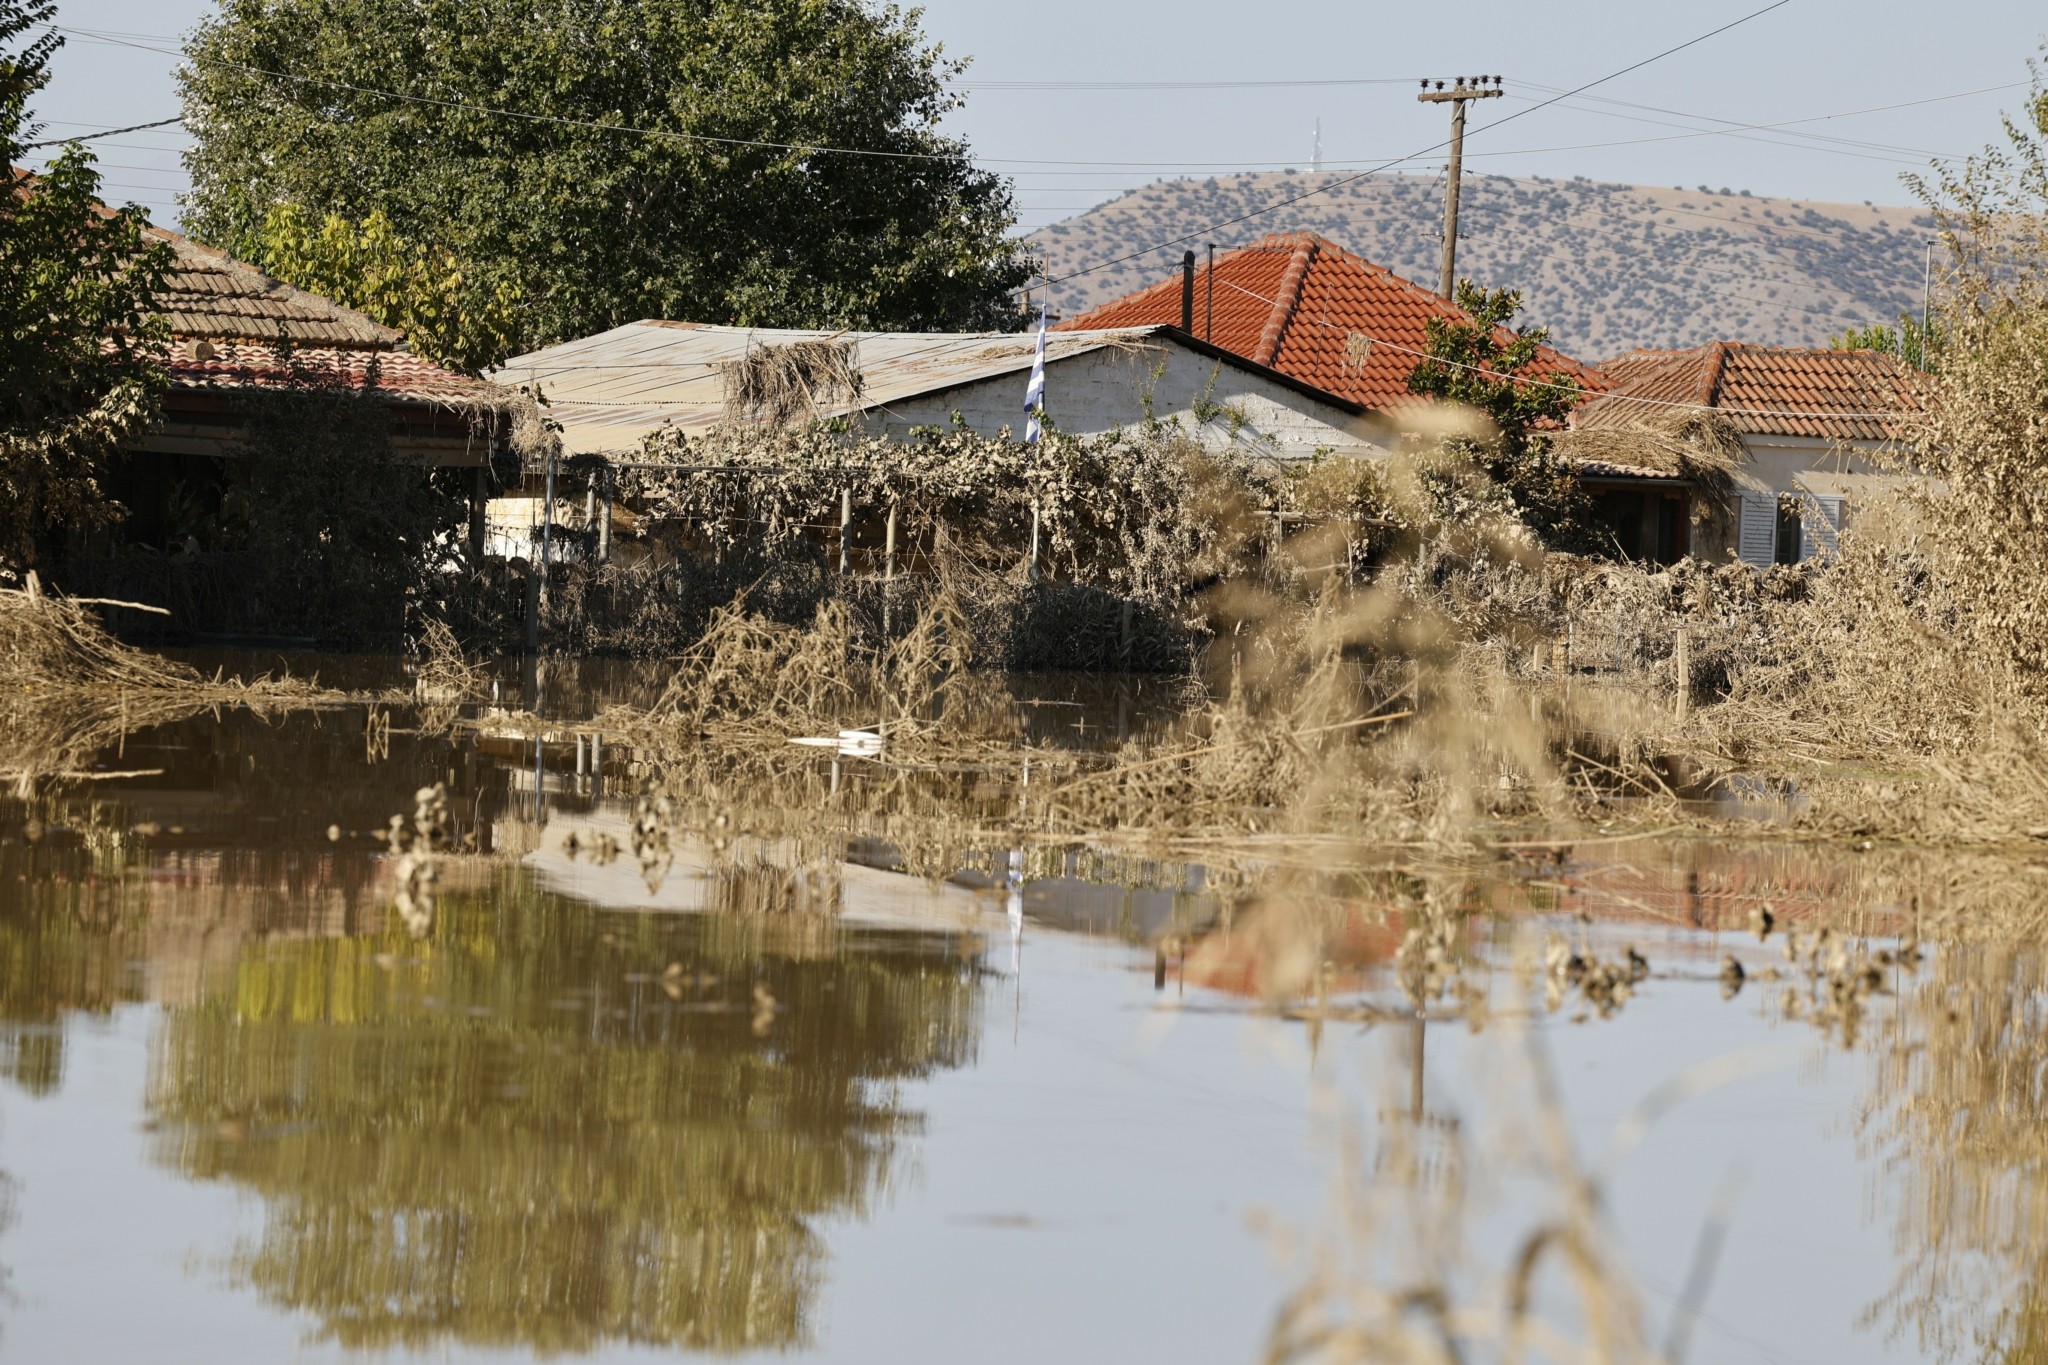 Αναζητούνται λύσεις για την εξασφάλιση μόνιμης στέγασης σε πλημμυροπαθείς της Θεσσαλίας